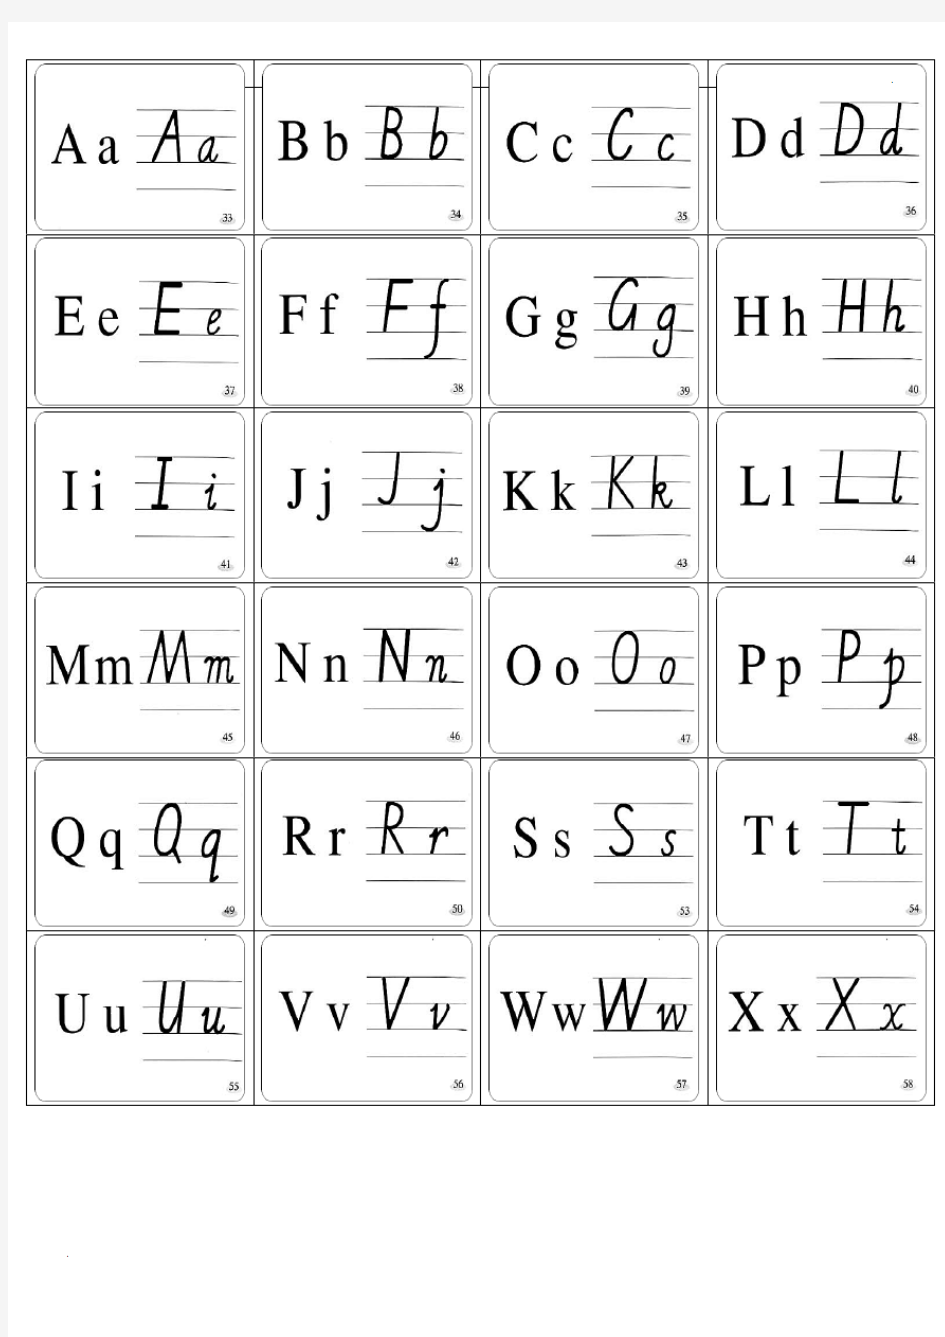 26个英文字母印刷体与手写体对照表 (3)